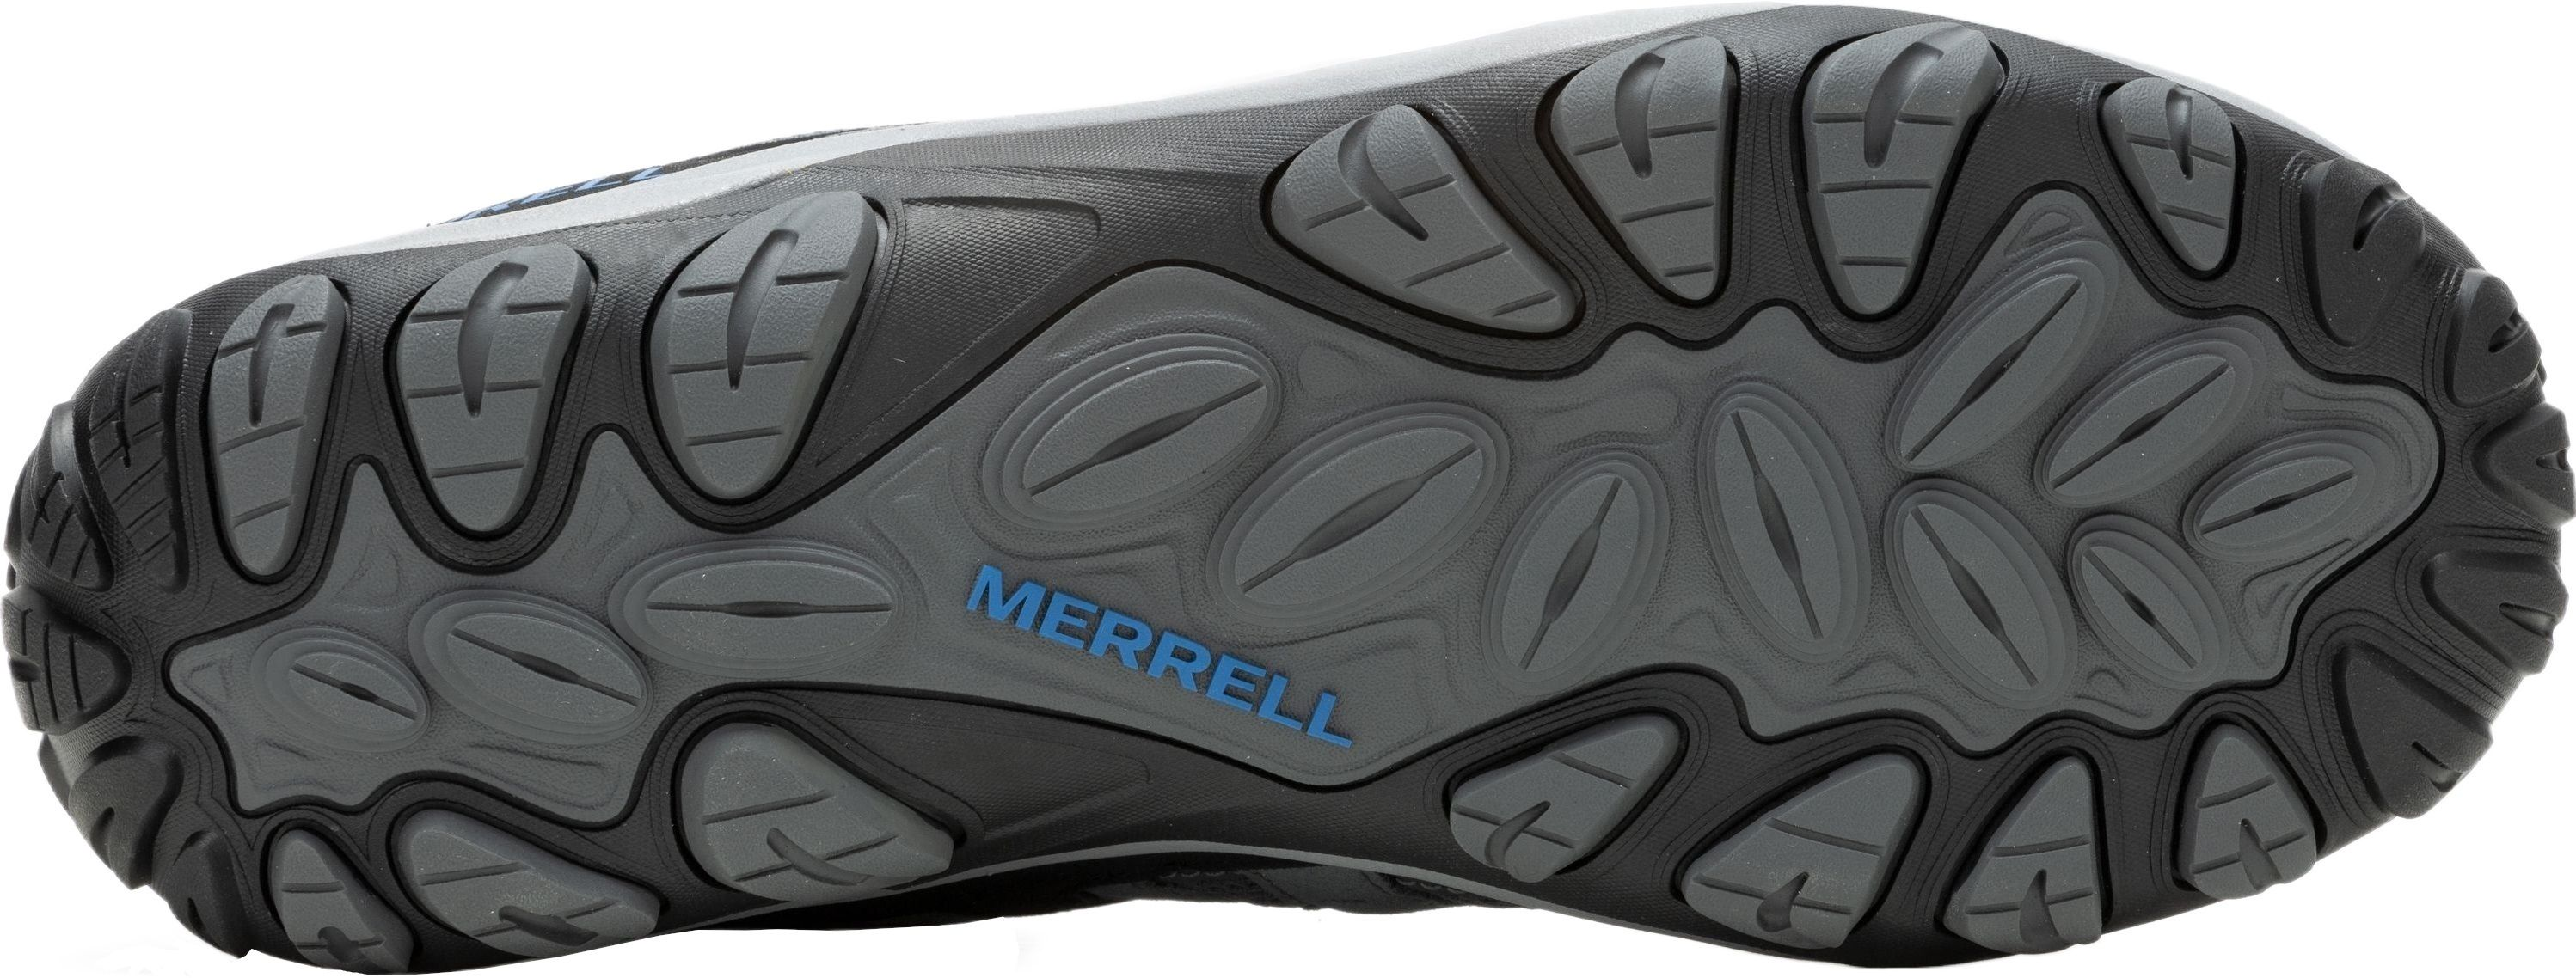 Кроссовки мужские Merrell Accentor 3 Rock/Blue 45 серый/синий фото 6